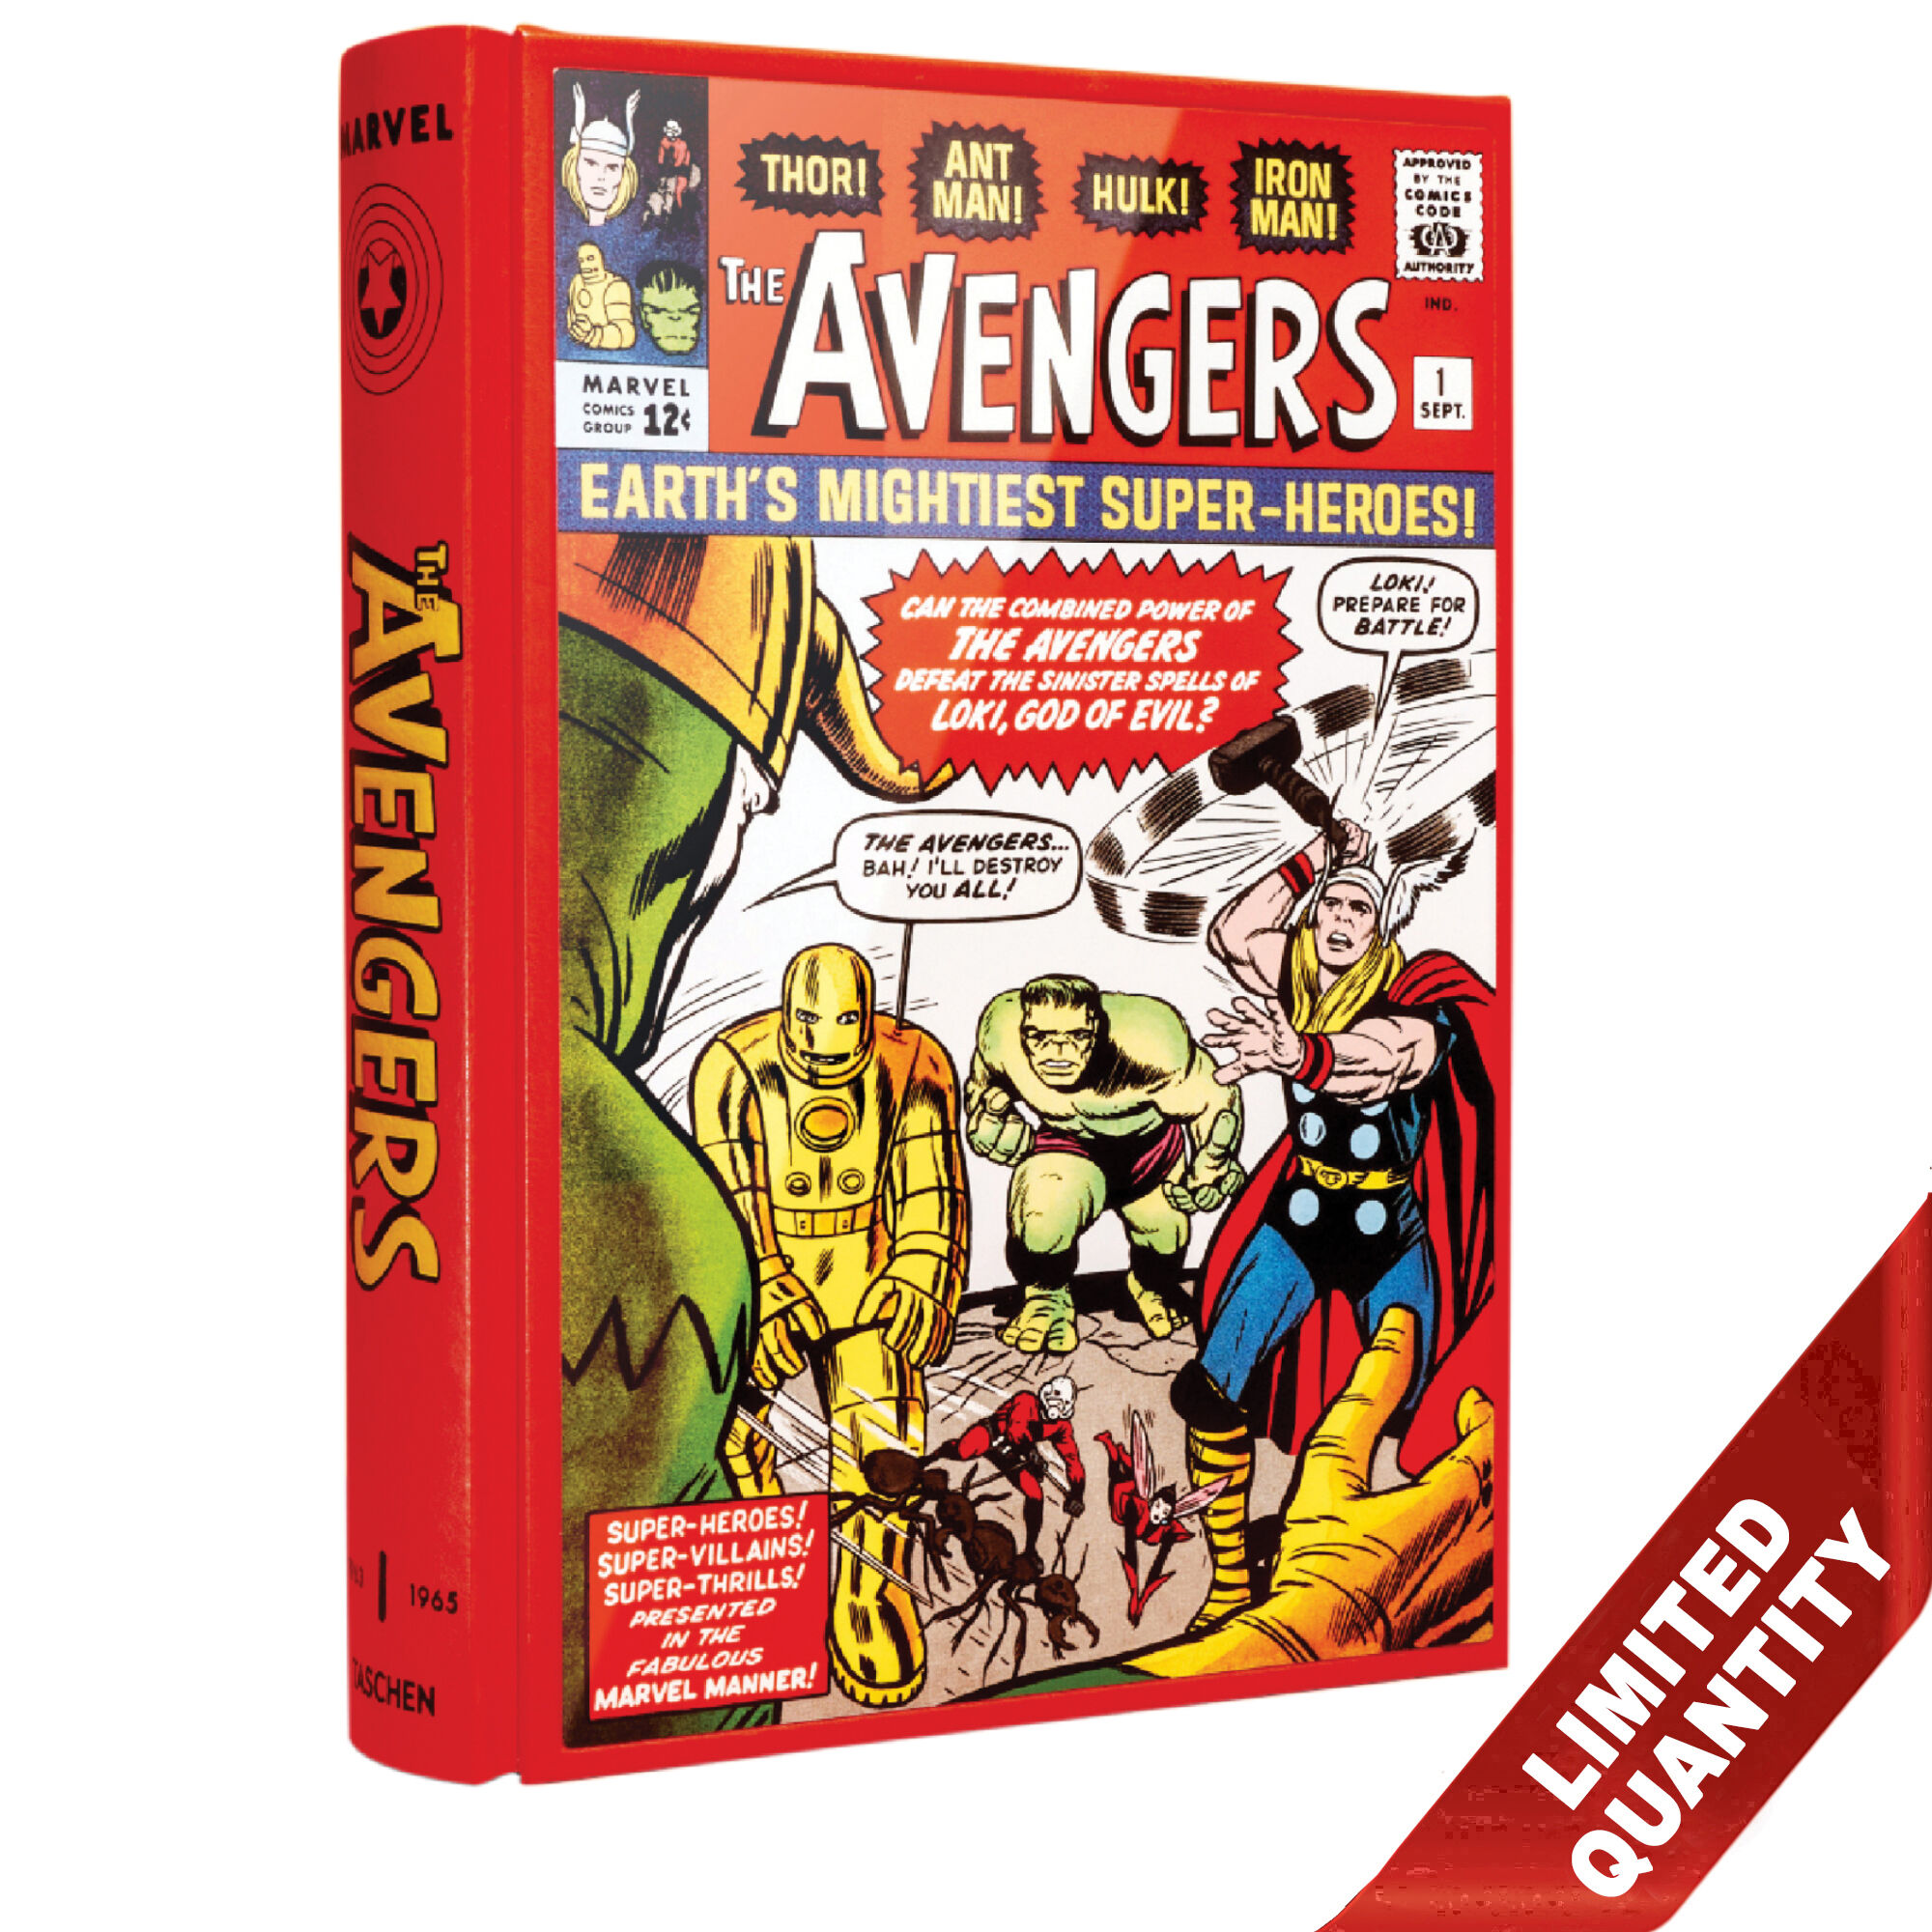 Avengers $600 edition 3899 b LQ